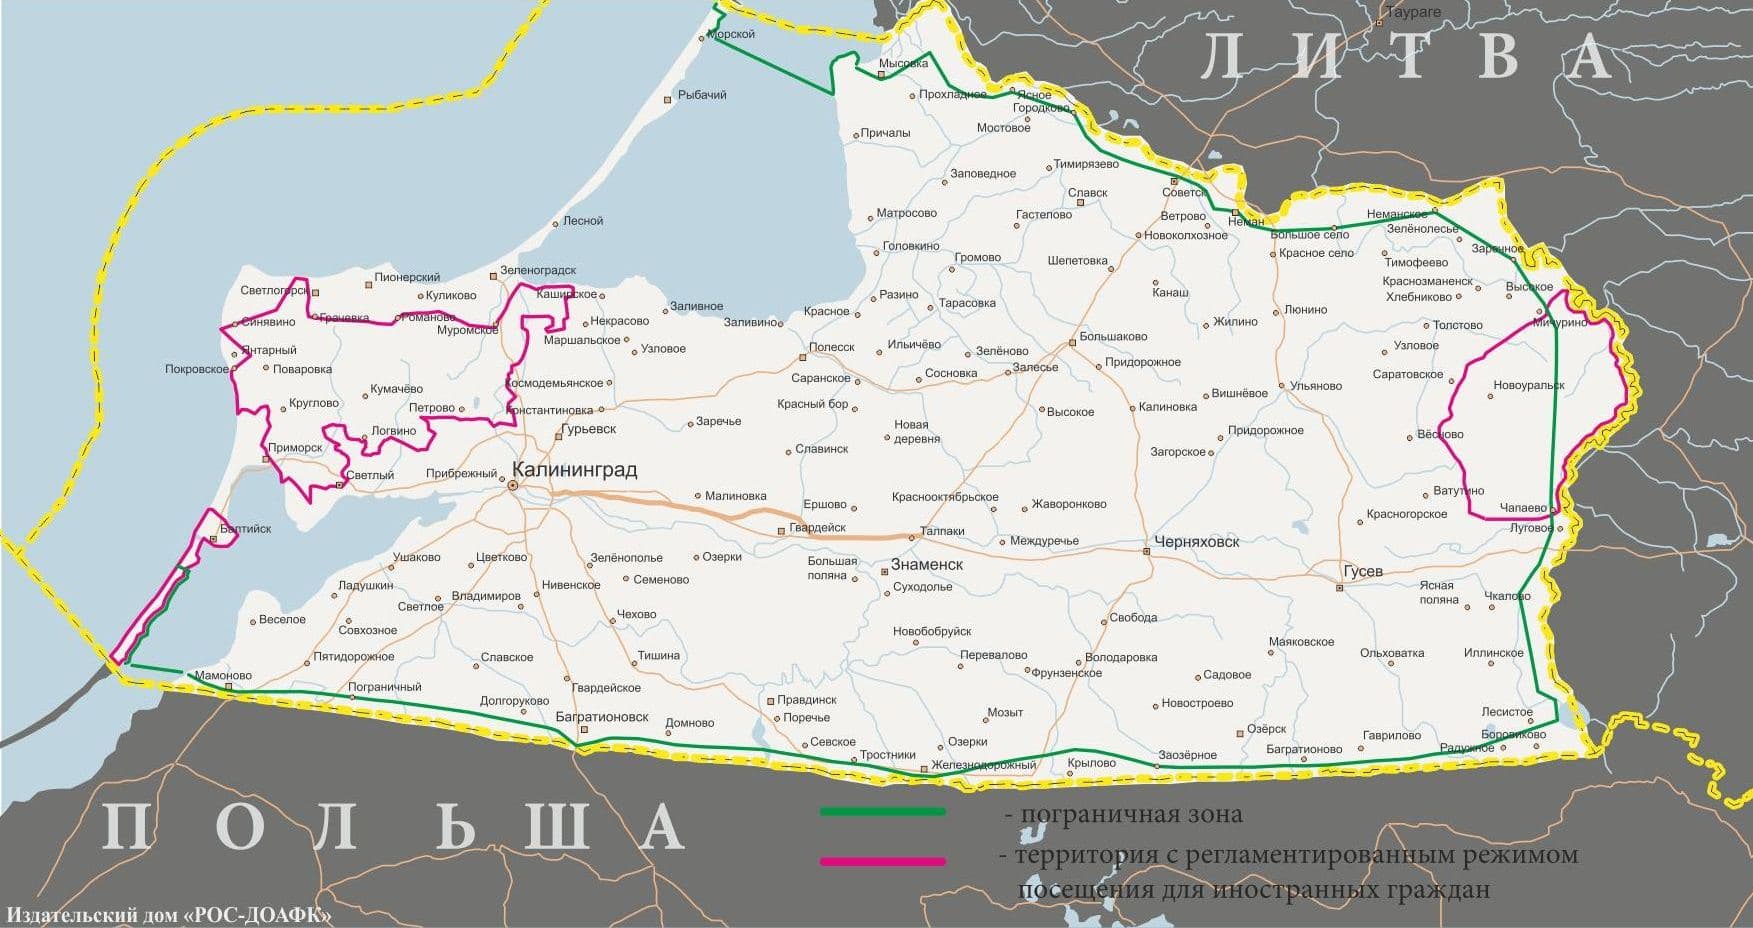 Карта пограничной зоны и регламентированной территории